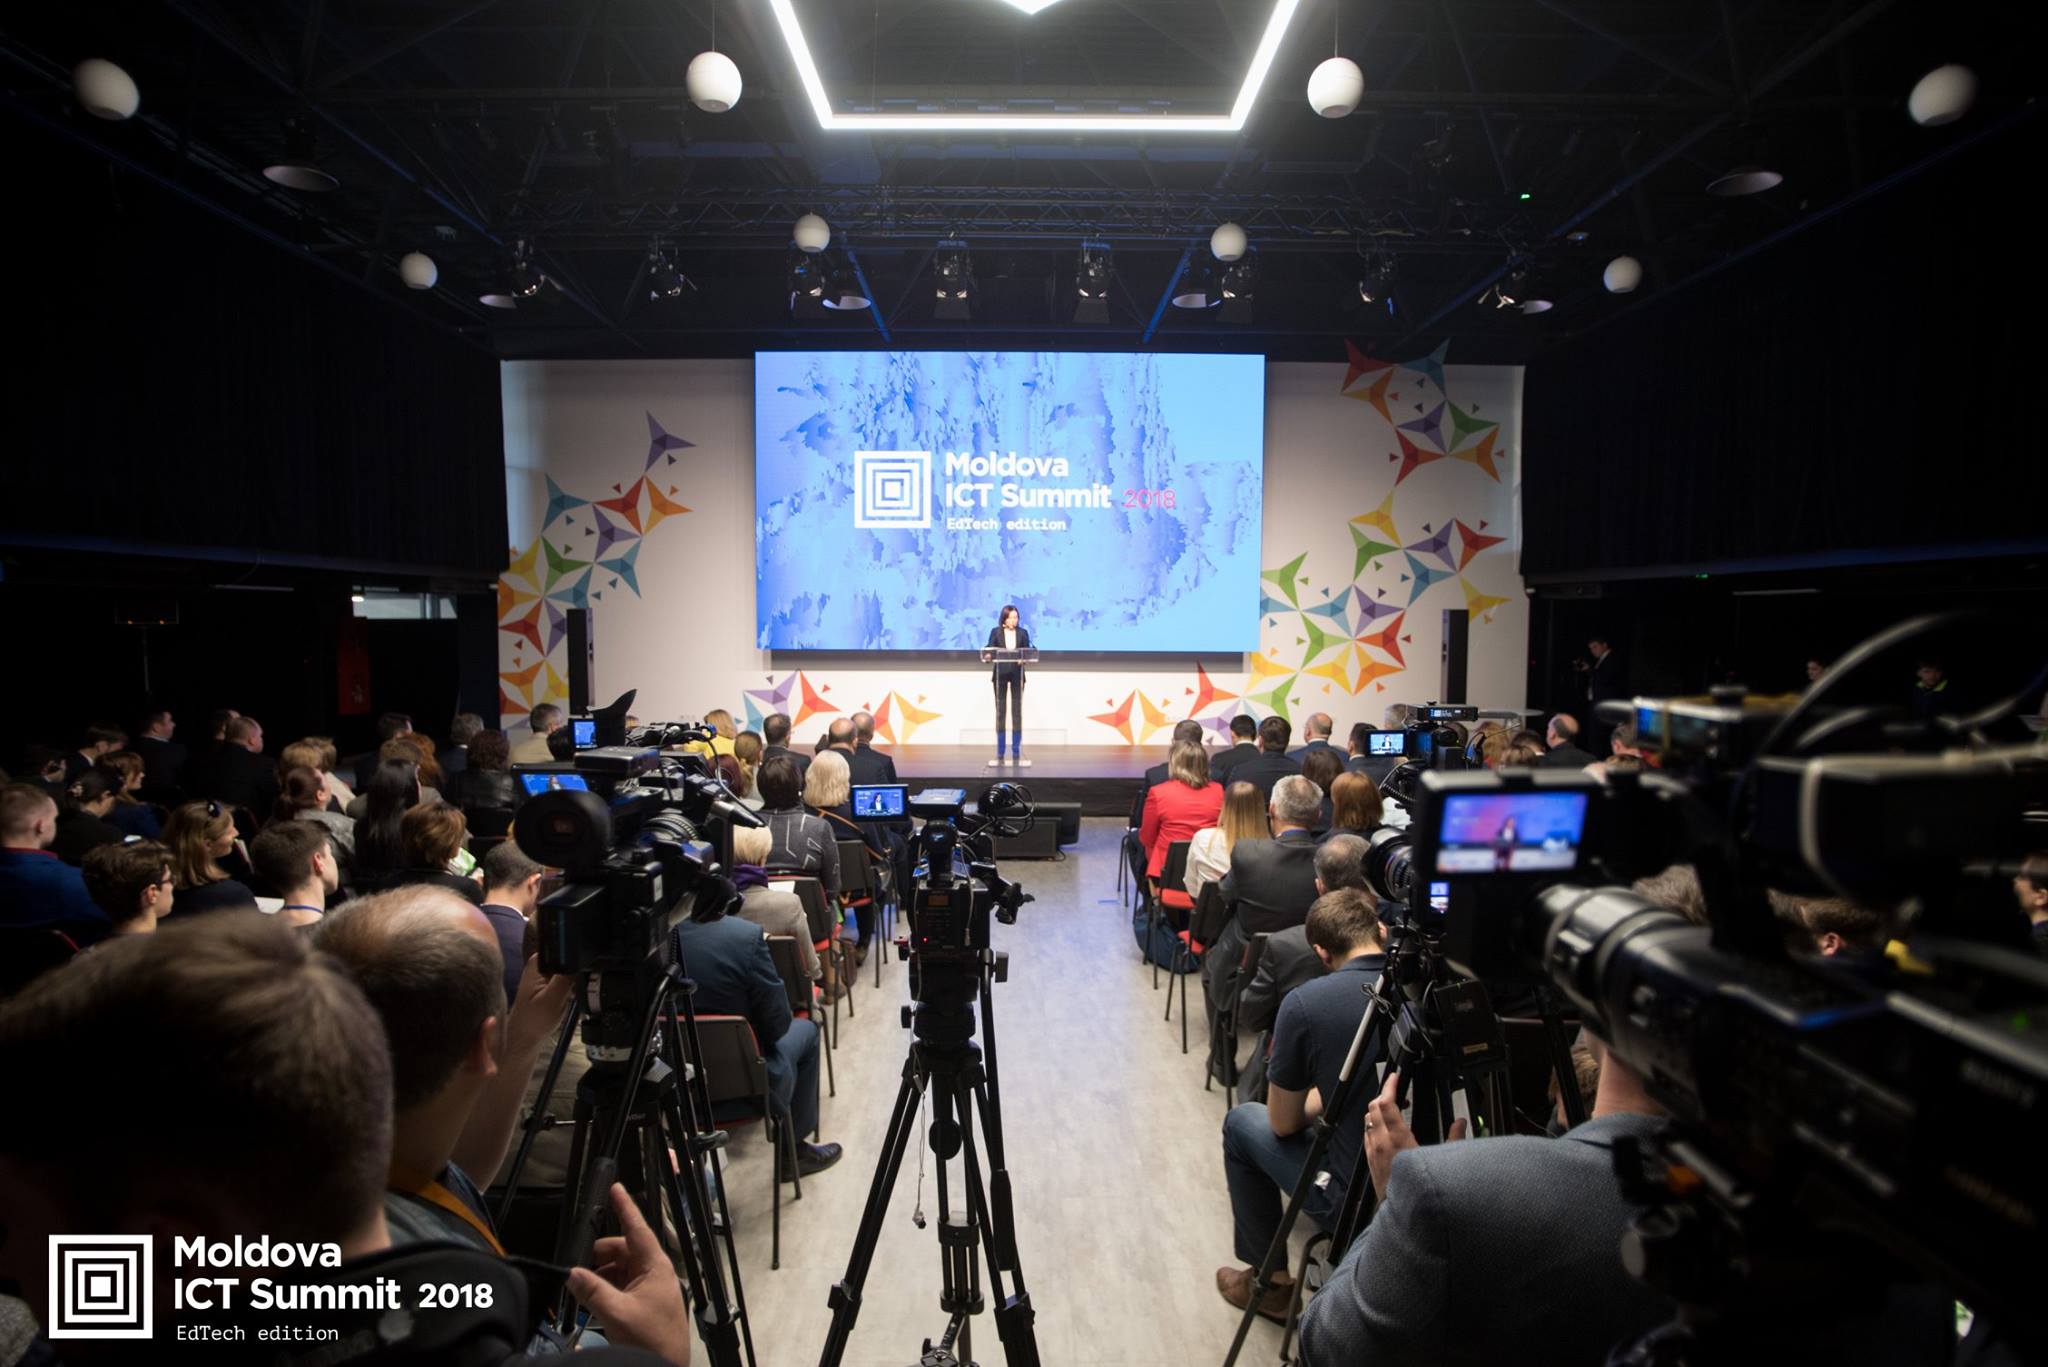 Prezentarea proiectului Academy+Moldova la Moldova ICT Summit 2018, ediția dedică educației digitale